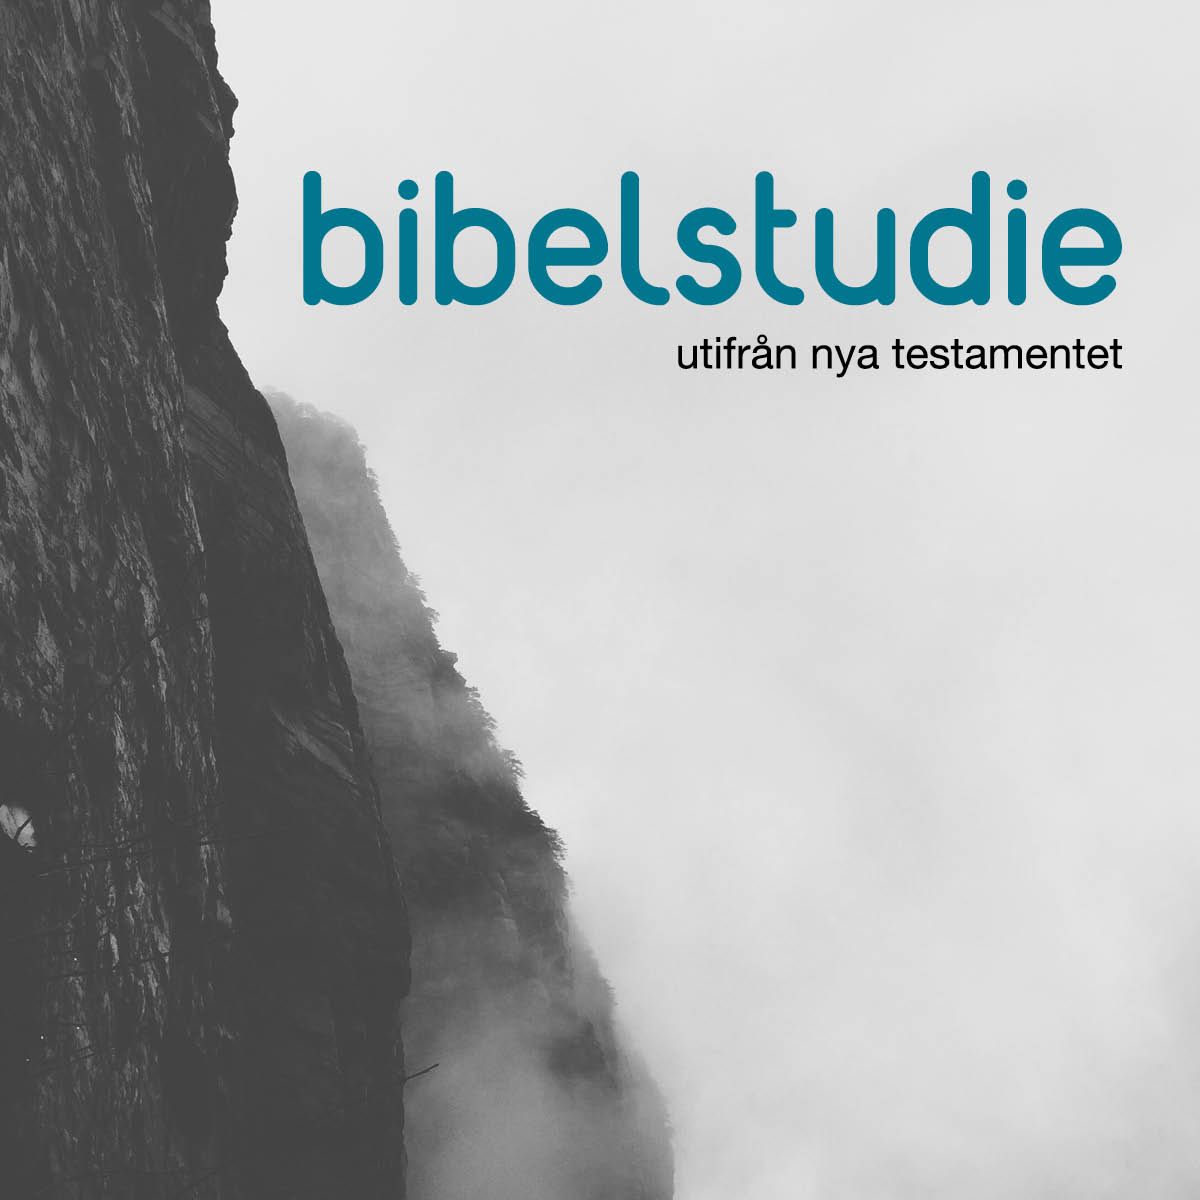 bibelstudie, Leif Carlsson, Forserum, Centrumförsamlingen, Centrumkyrkan